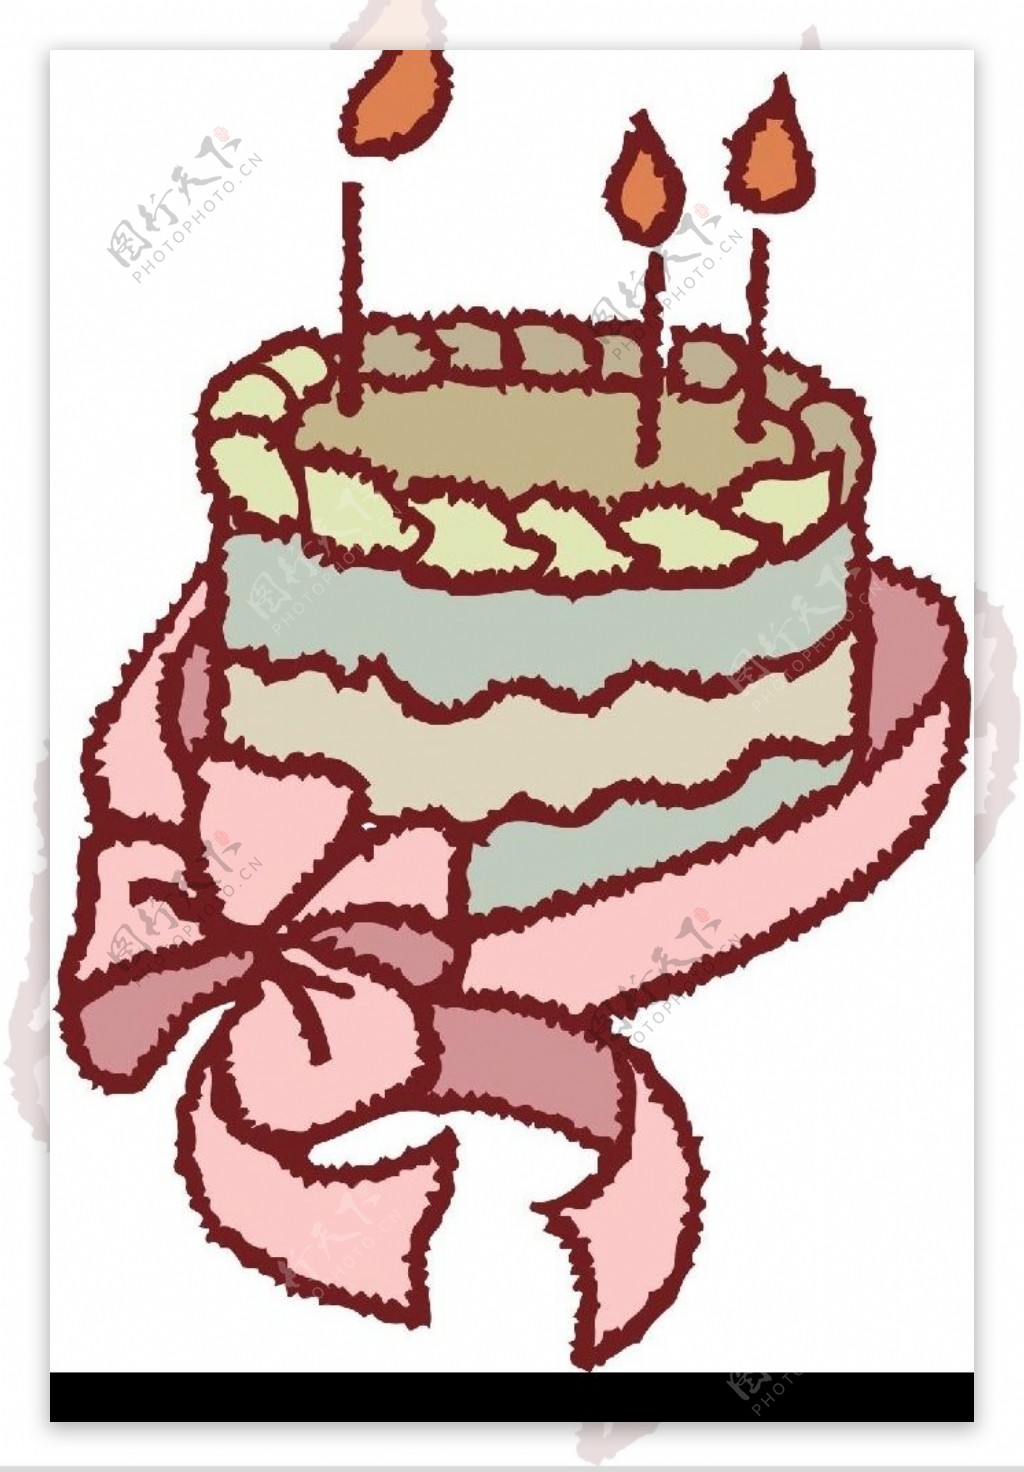 生日蛋糕插画图片